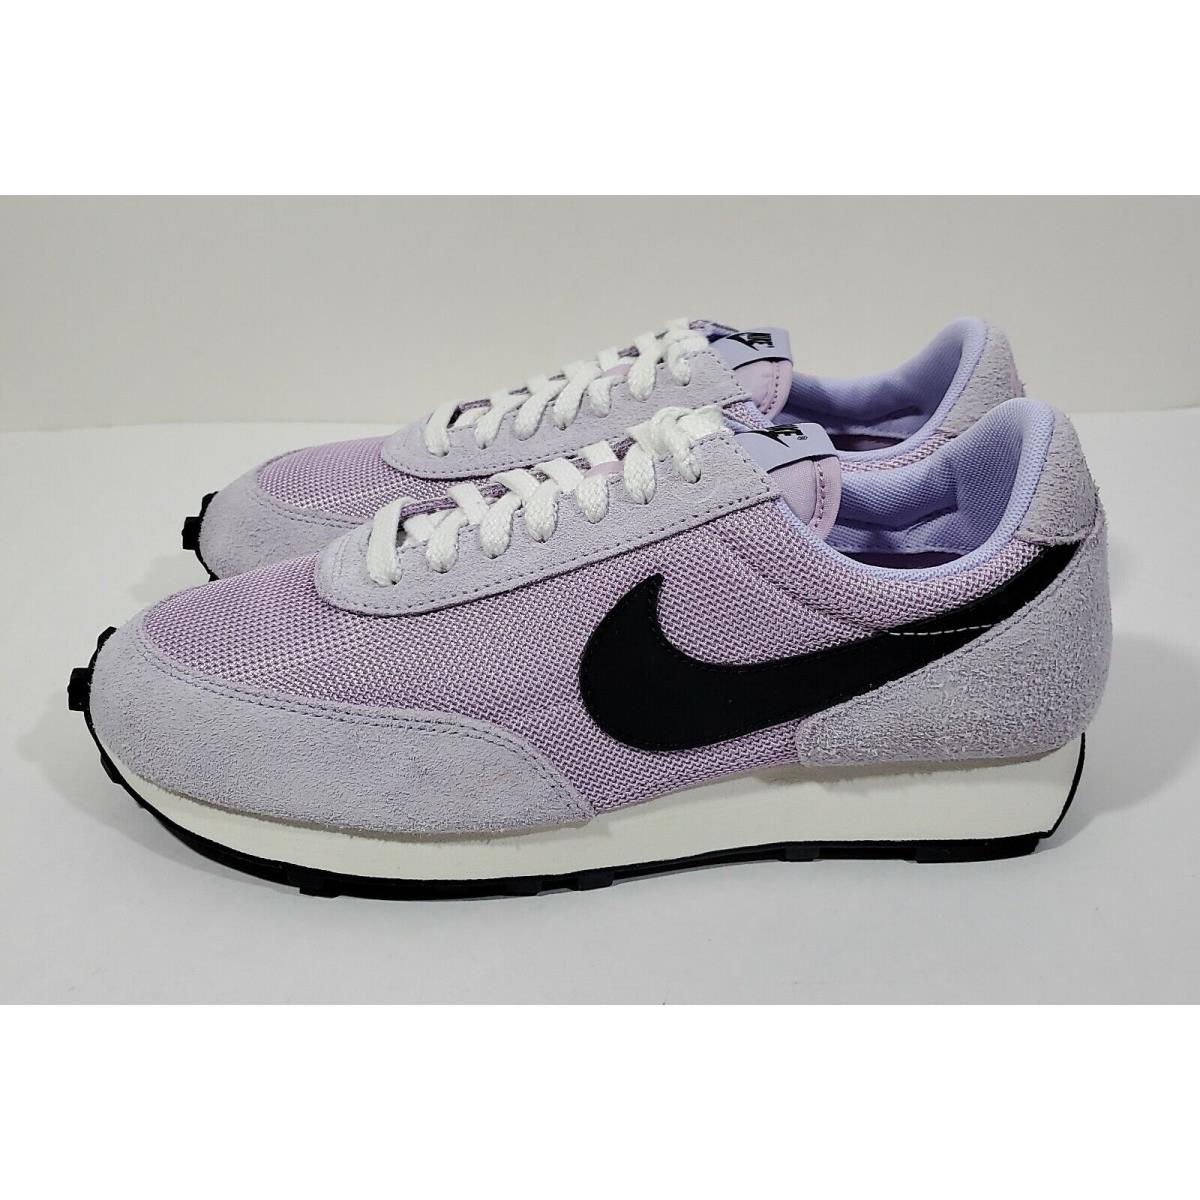 Nike Daybreak SP Mens Running Shoes Lavender Mist Black Lilac Size 9.5